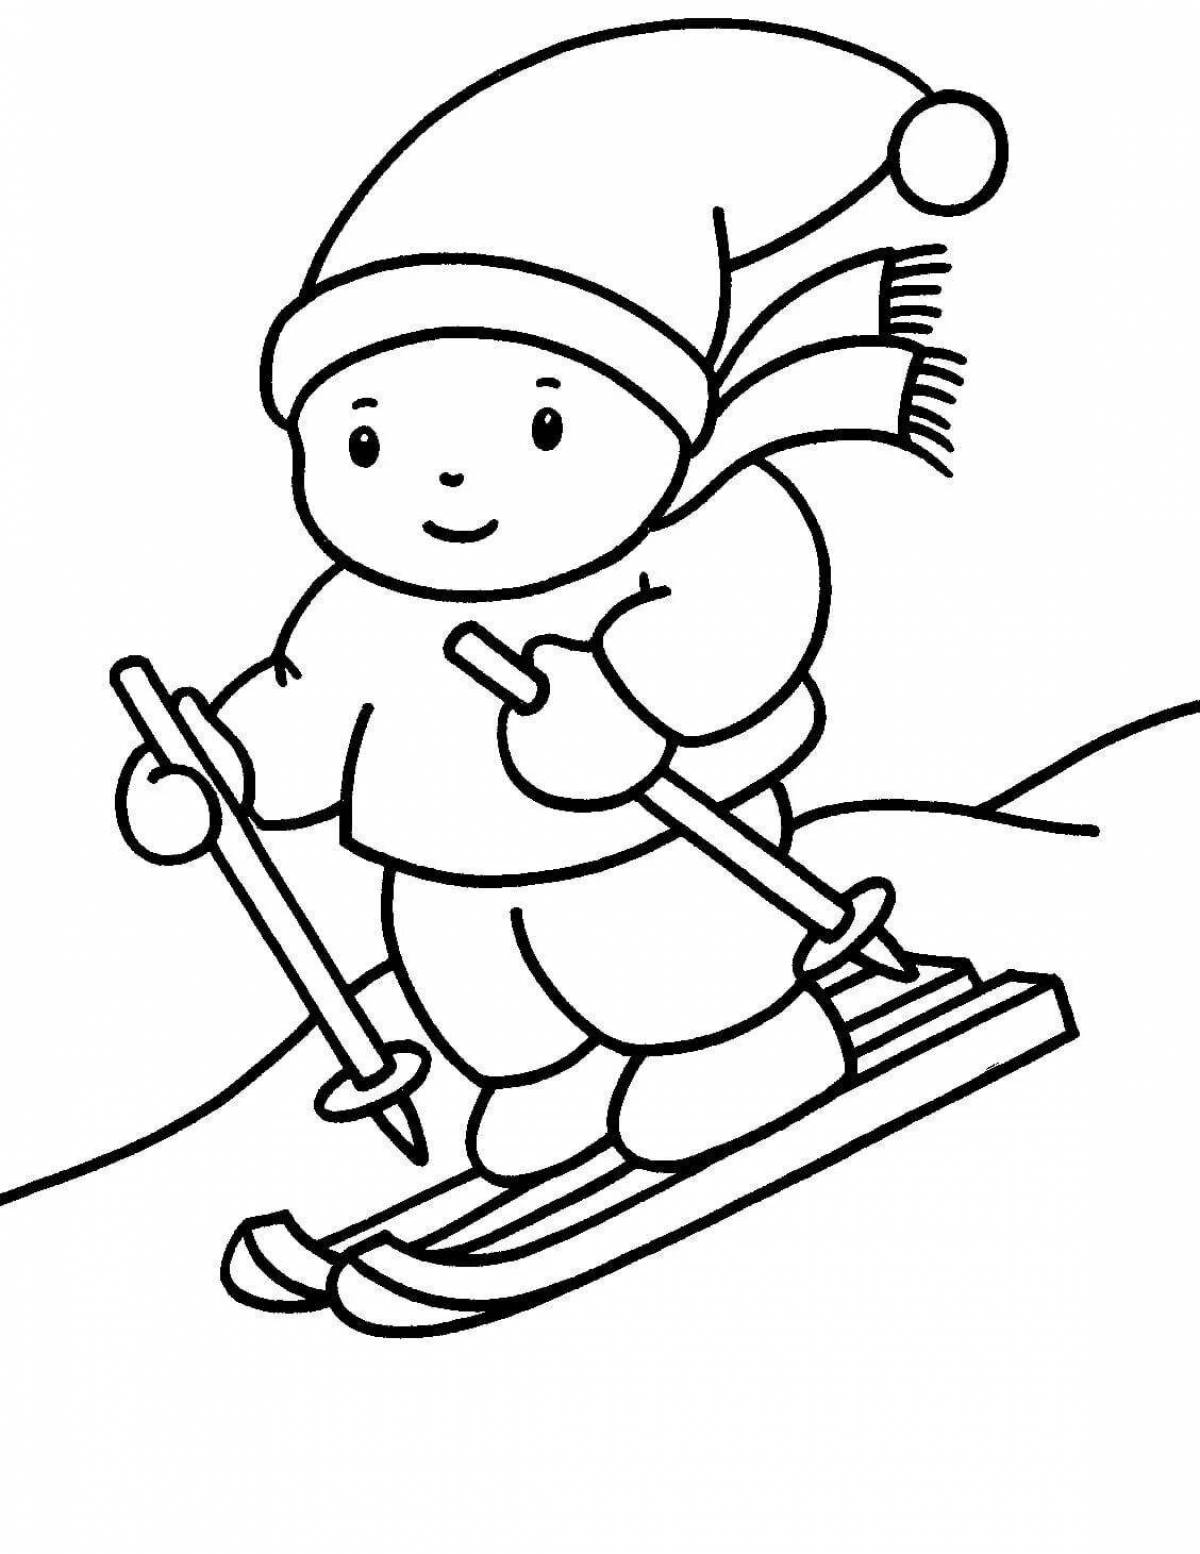 Праздничные лыжи для детей